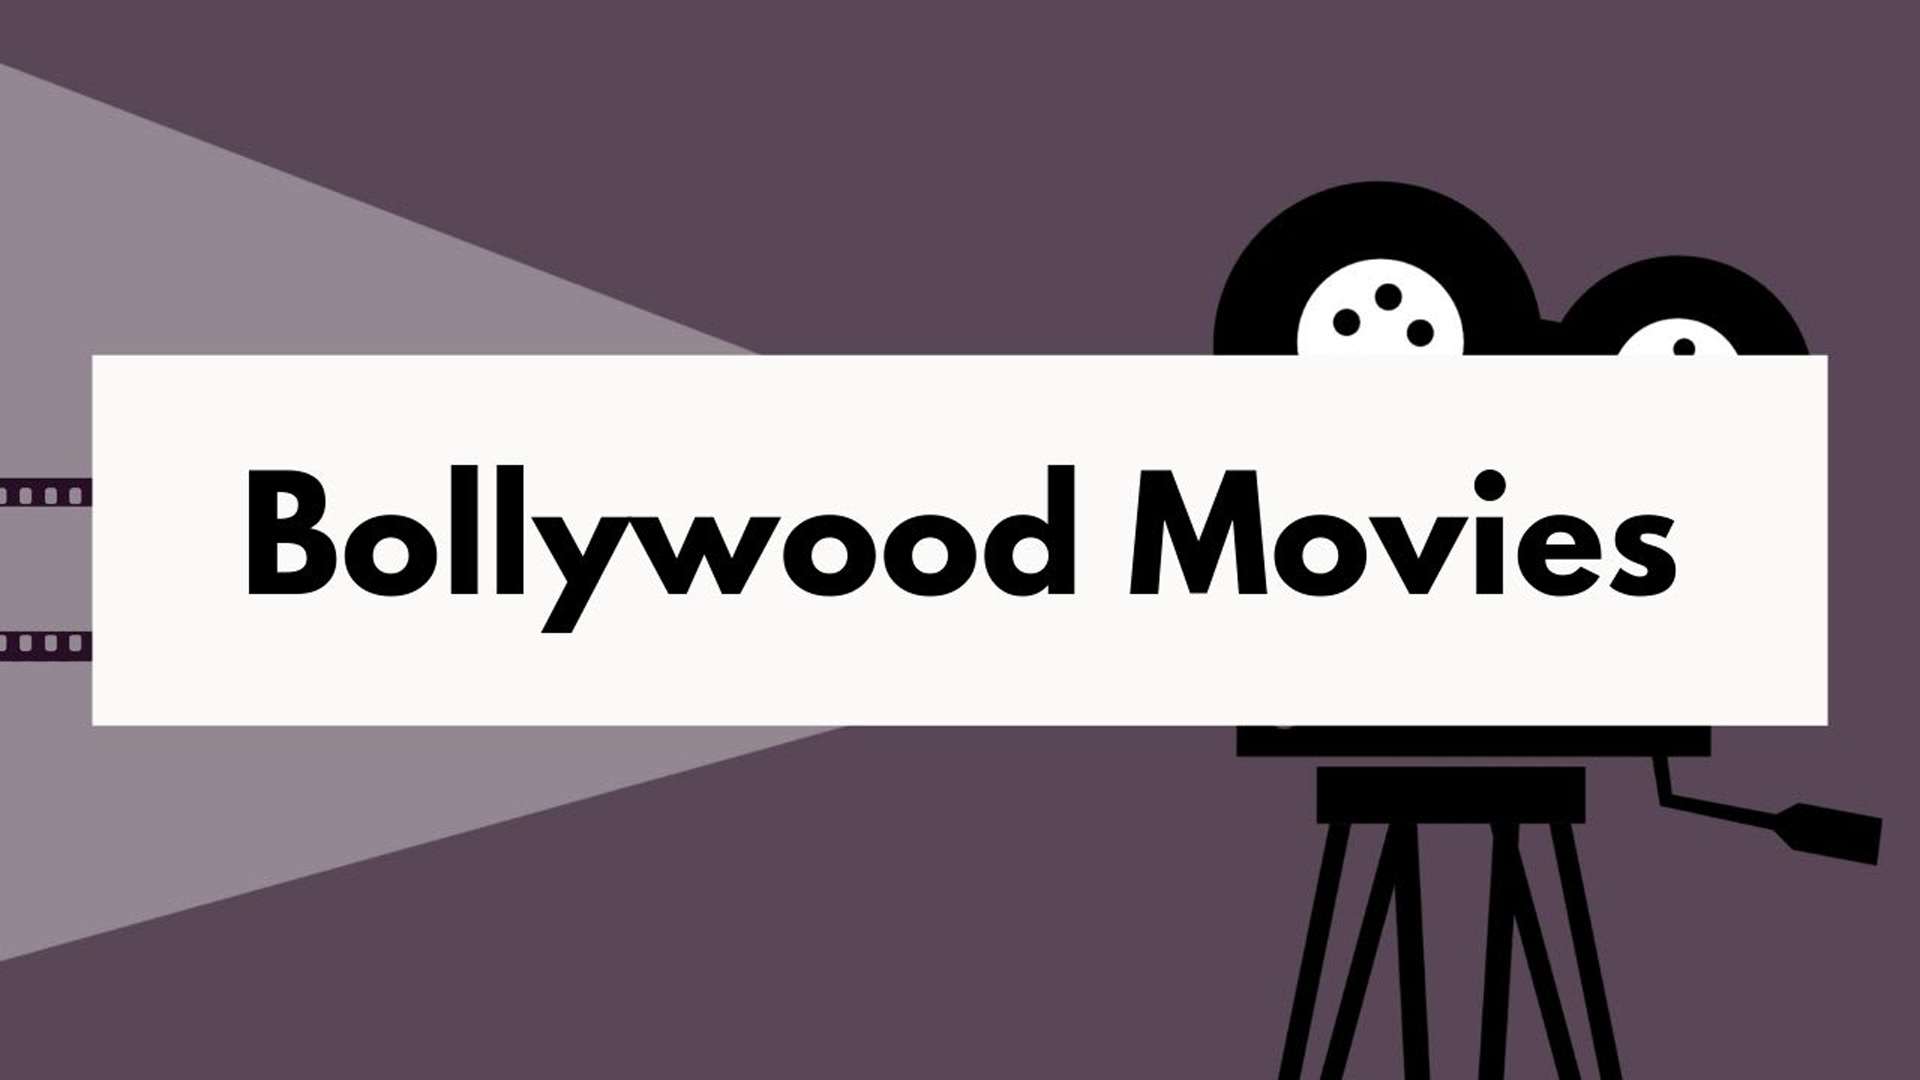 ۱۵ فیلم برتر بالیوود که باید تماشا کنید